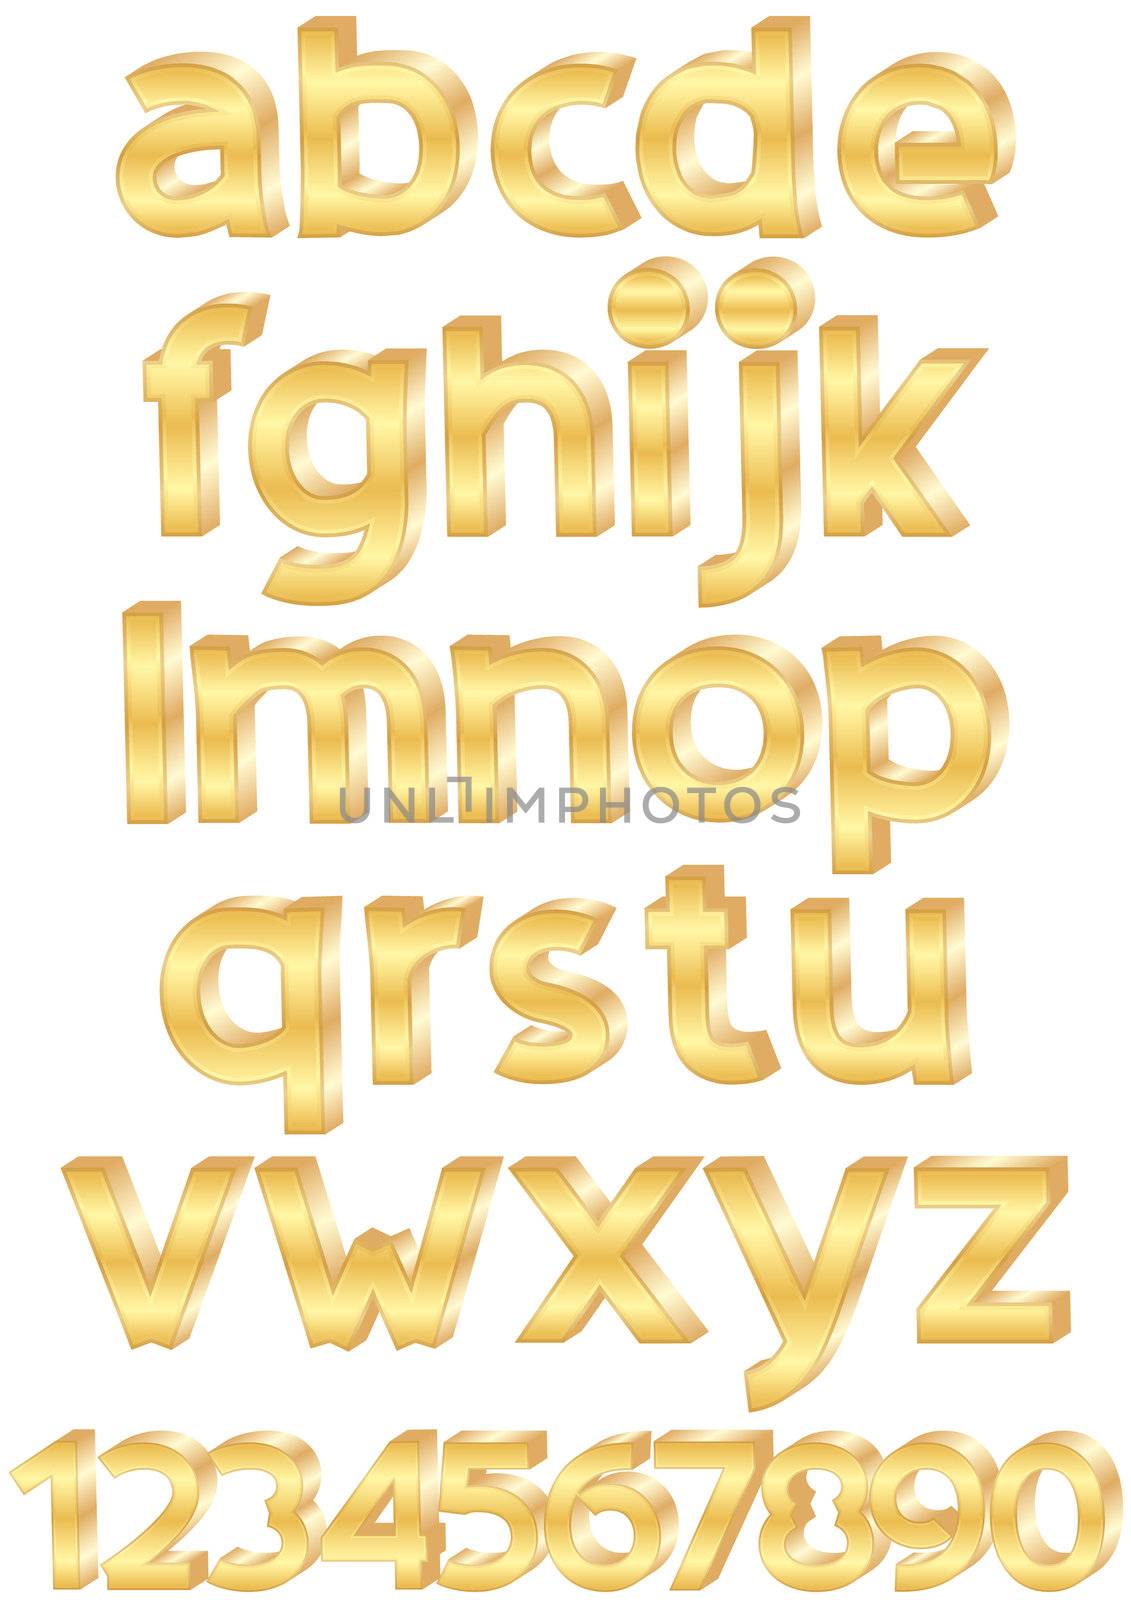 alphabet by rodakm